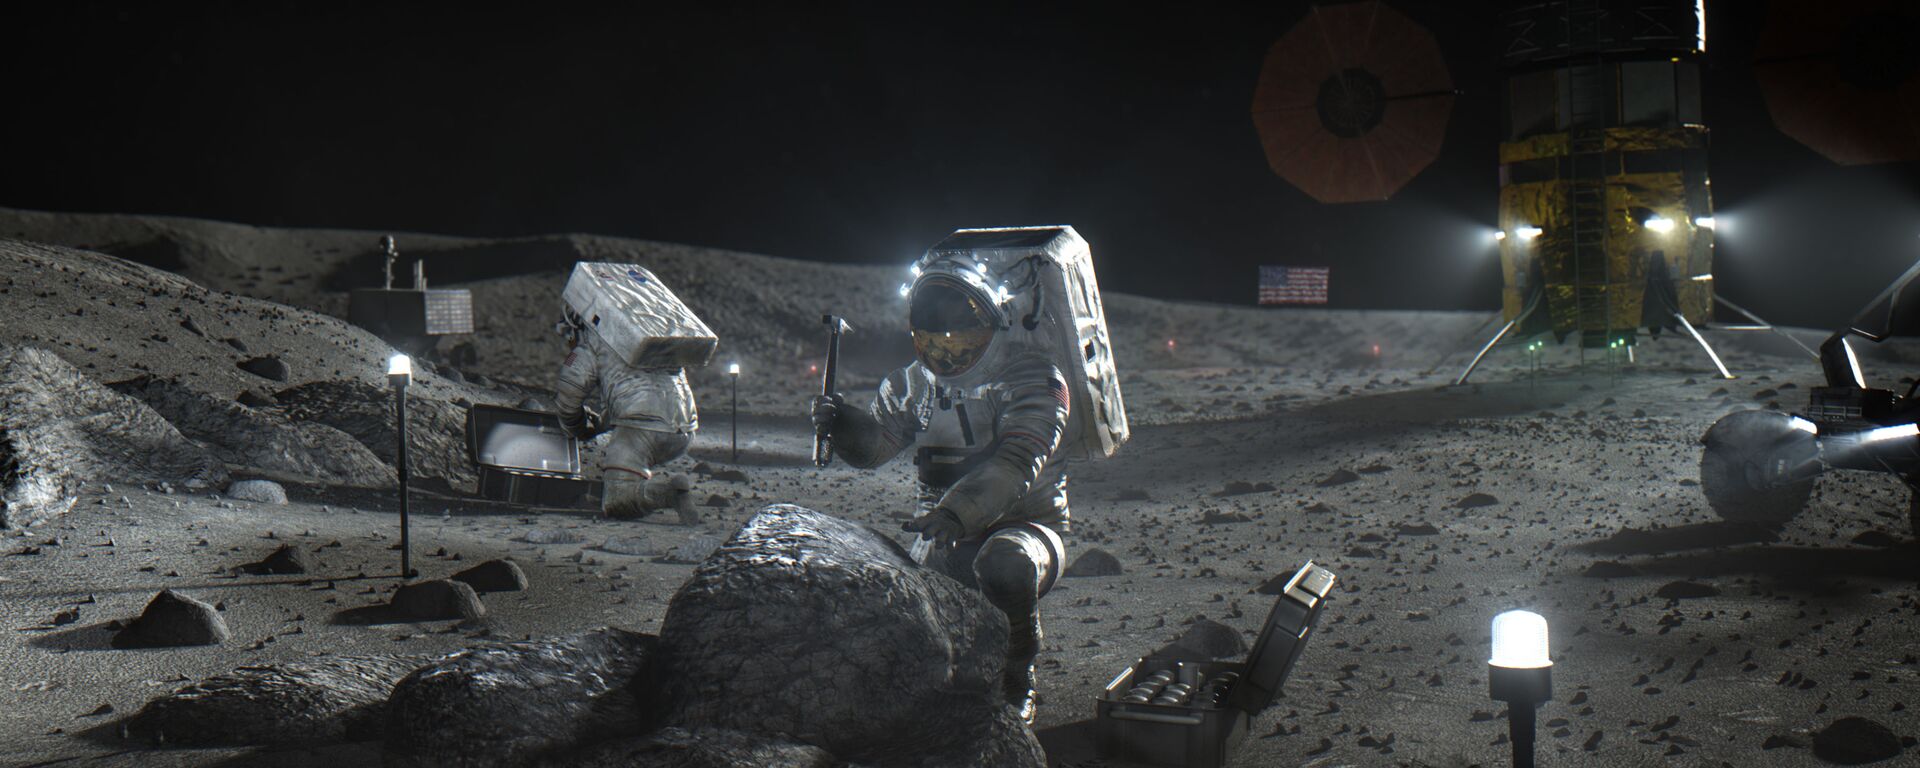 Астронавты космической программы Артемида на Луне в представлении художника - Sputnik Latvija, 1920, 30.04.2021